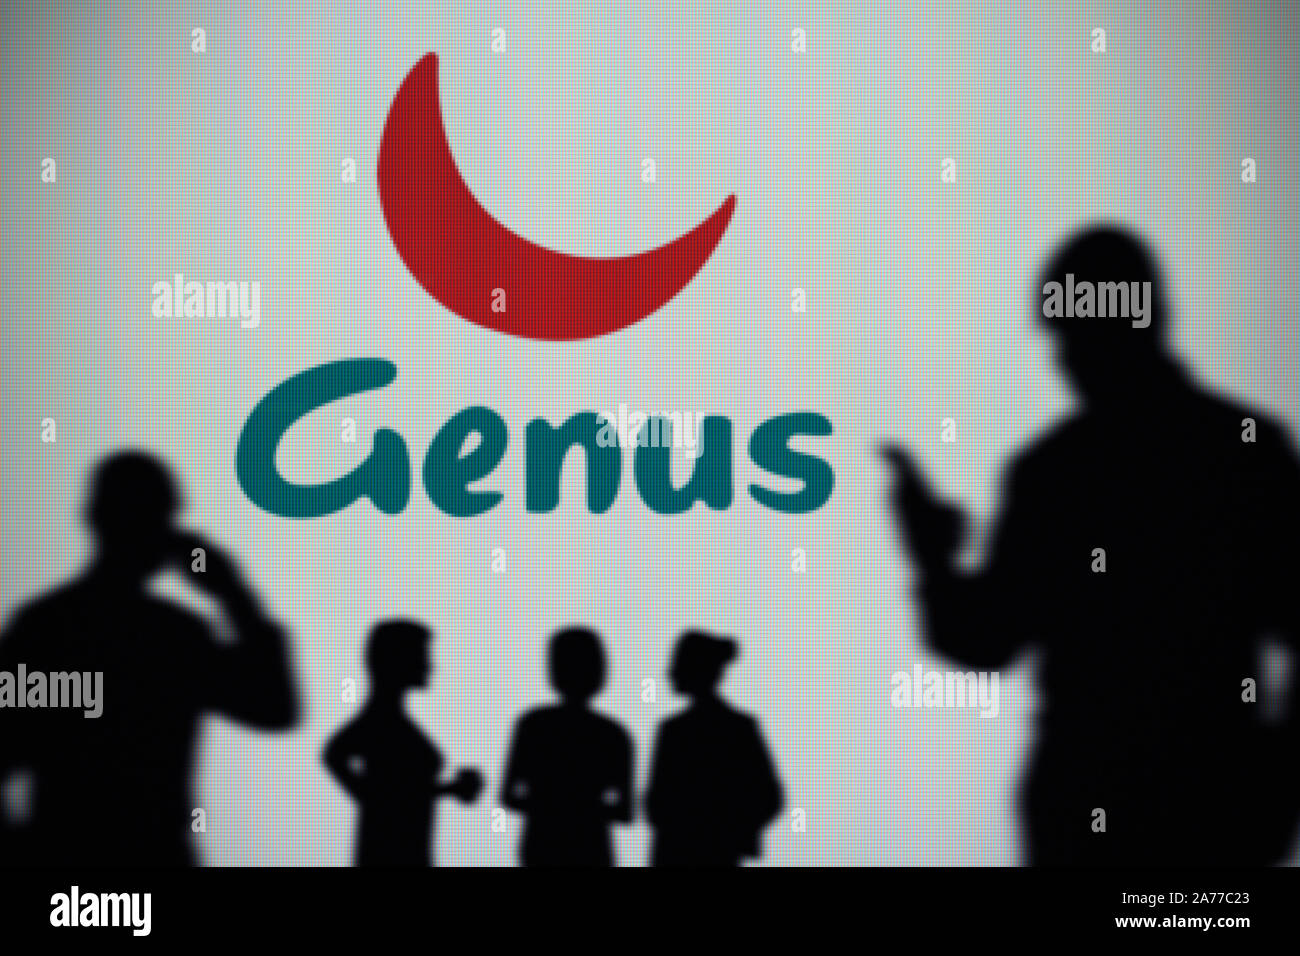 Il Genus plc logo è visibile su uno schermo a LED in background mentre si profila una persona utilizza uno smartphone (solo uso editoriale) Foto Stock